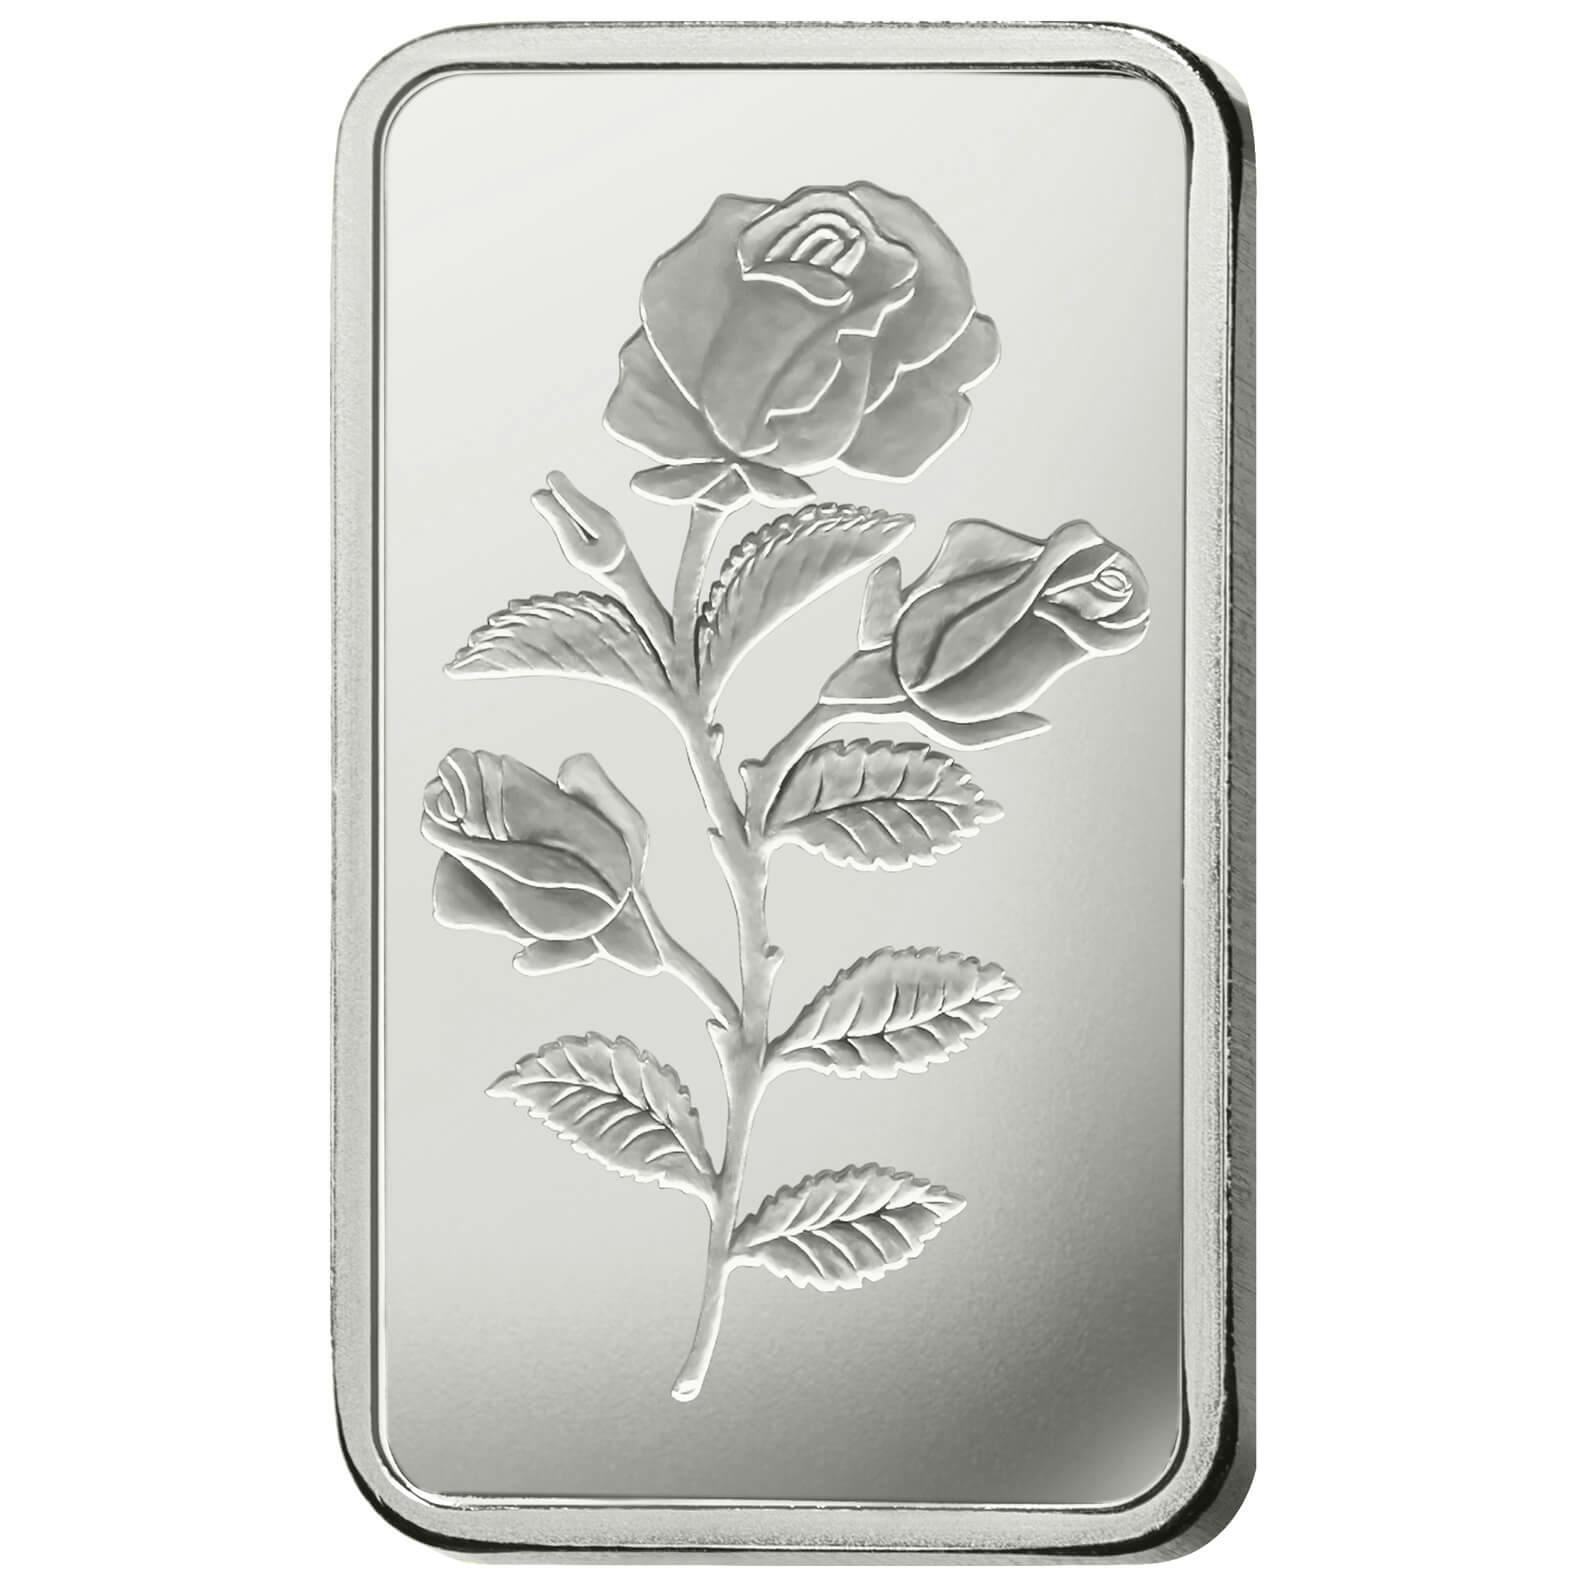 Compare argento, 10 grammi d'argento puro Rosa - PAMP Svizzera - Front